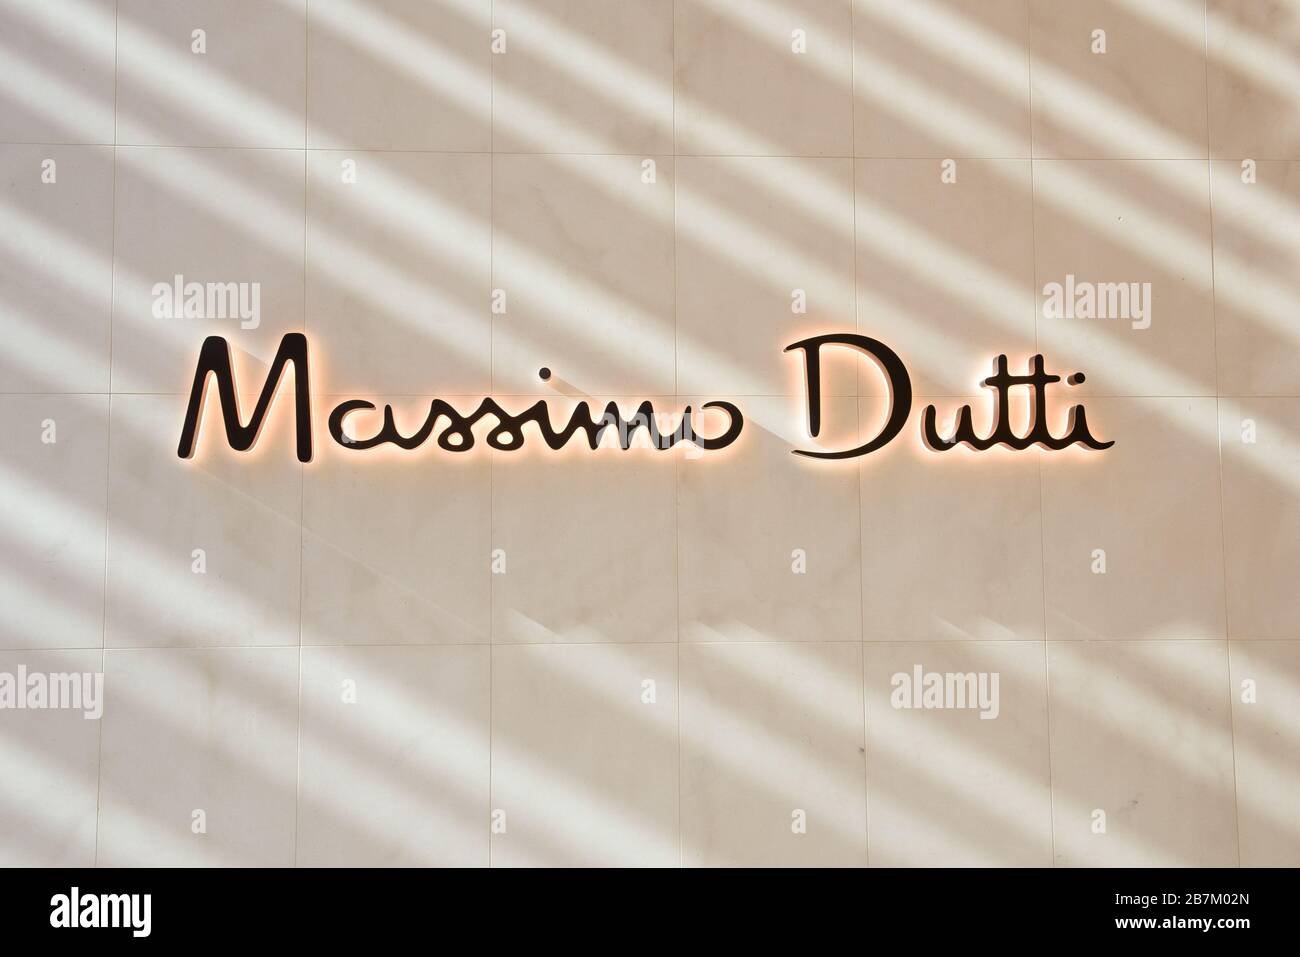 Massimo Dutti Banque d'image et photos - Alamy